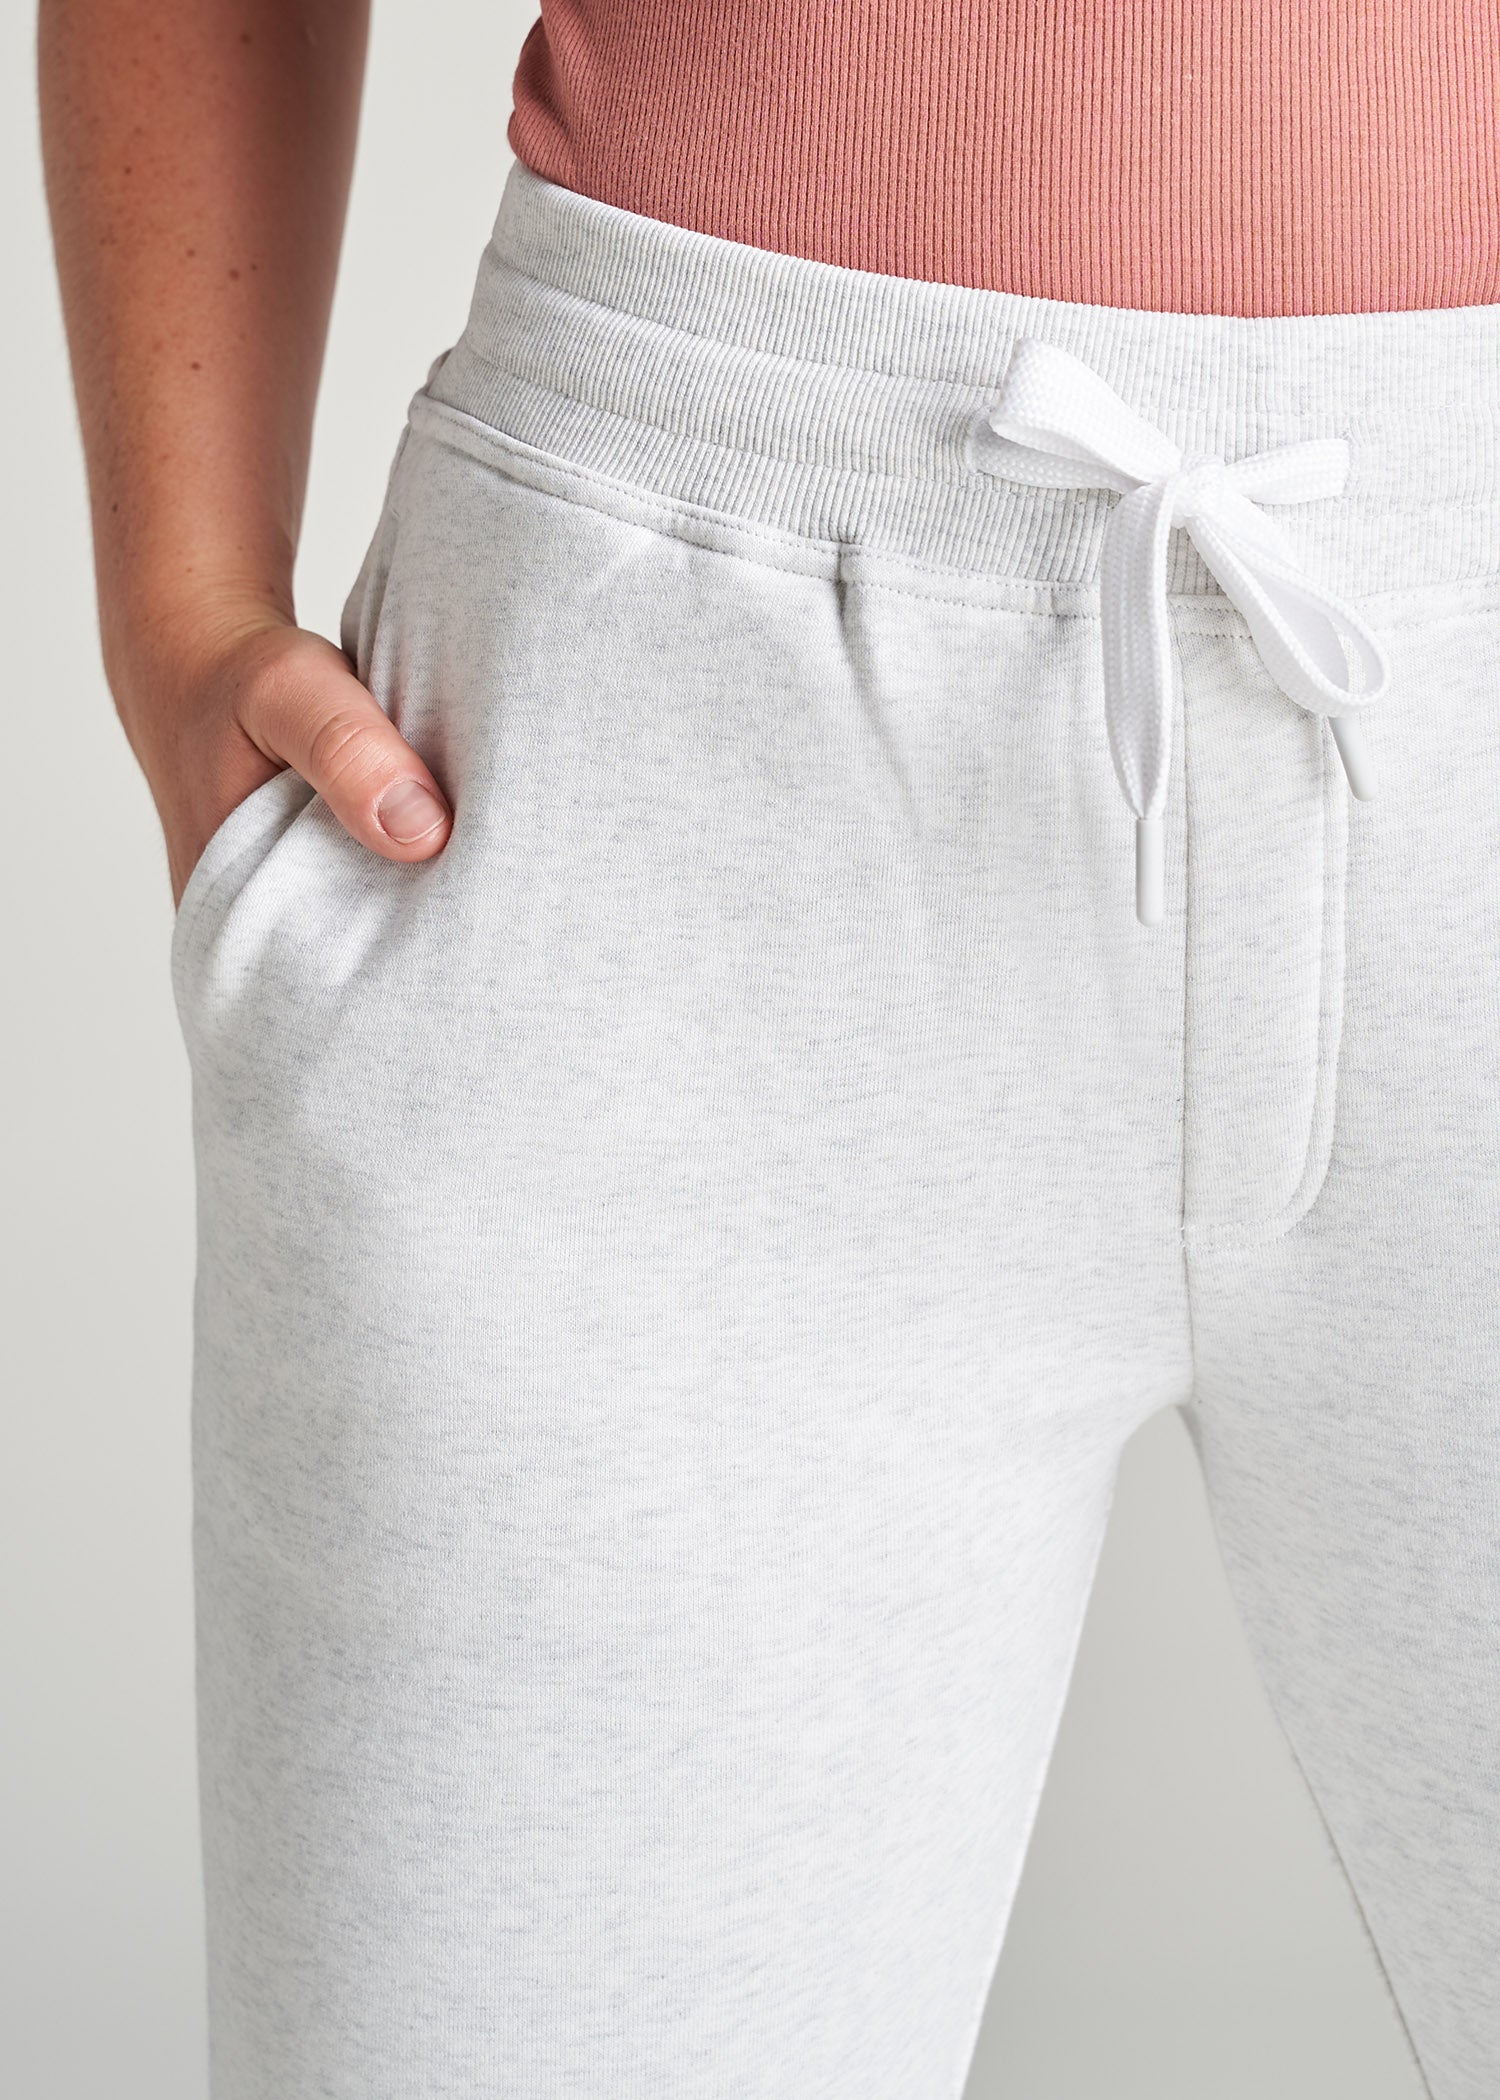 Wearever Fleece Open-Bottom Sweatpants for Tall Women in Heather Cloud White